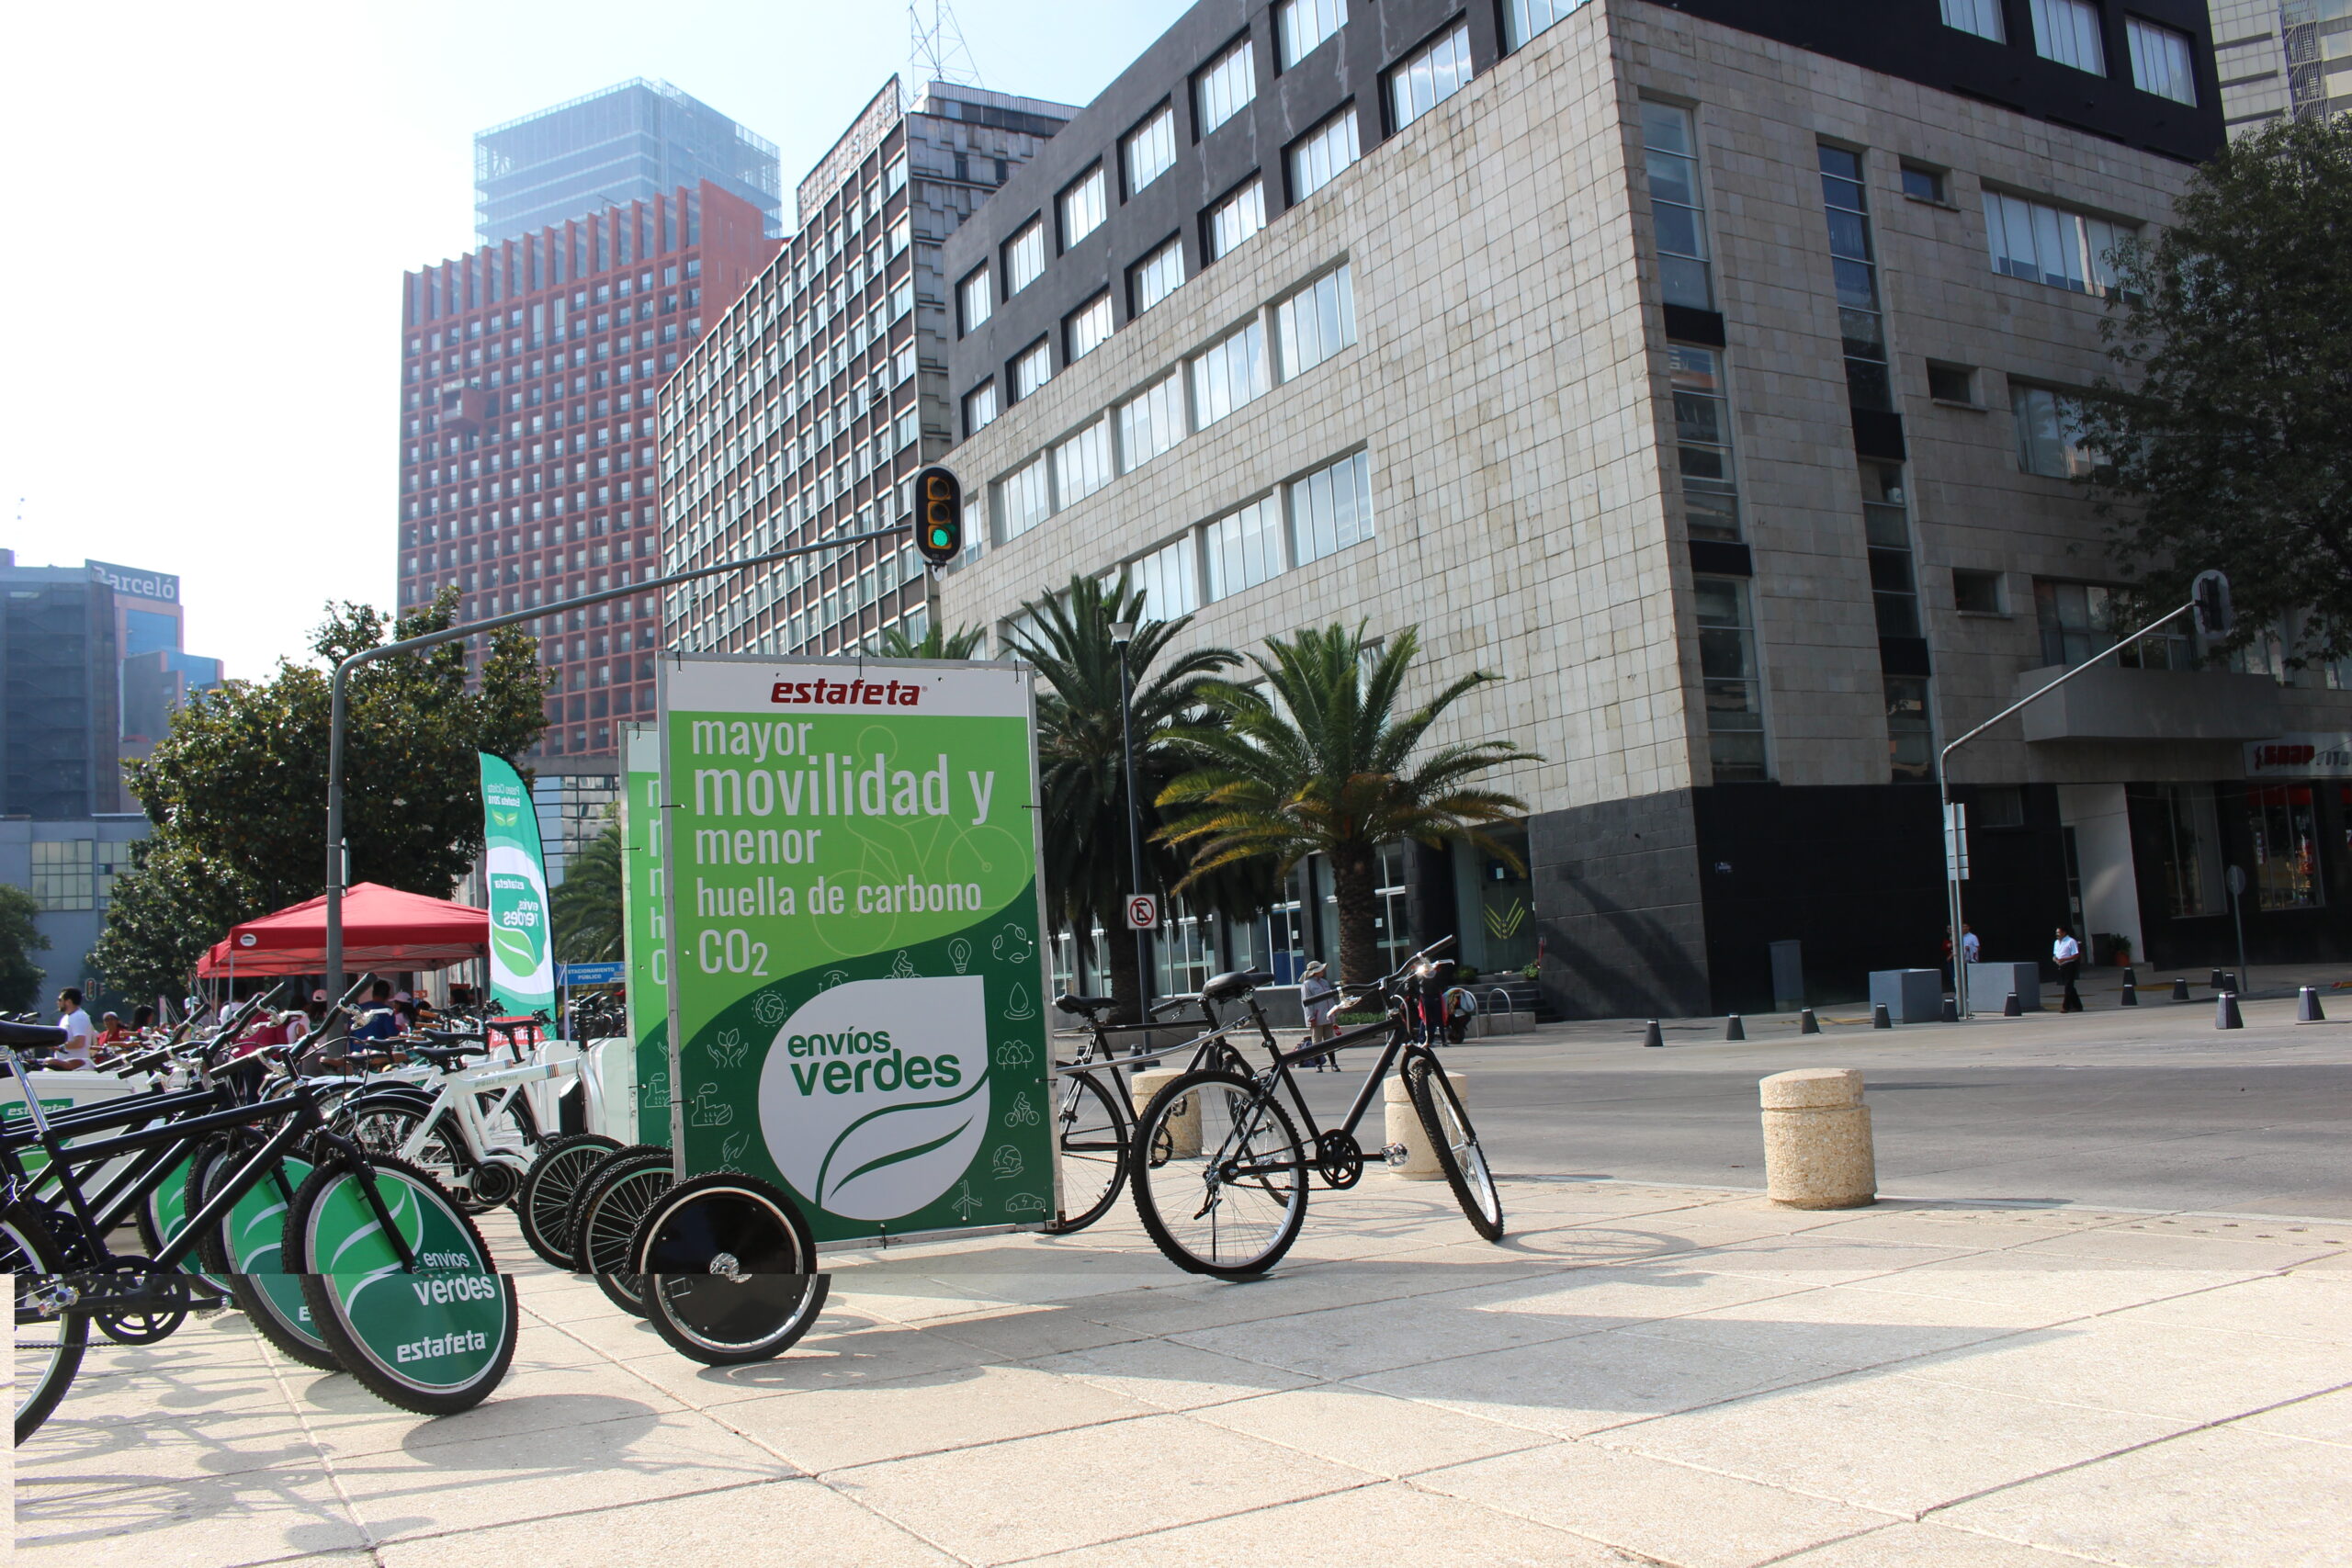 Las primera fase de las entregas verdes por medio de bicicletas eléctricas se implementará en las zonas de Polanco y Condesa, en CDMX.